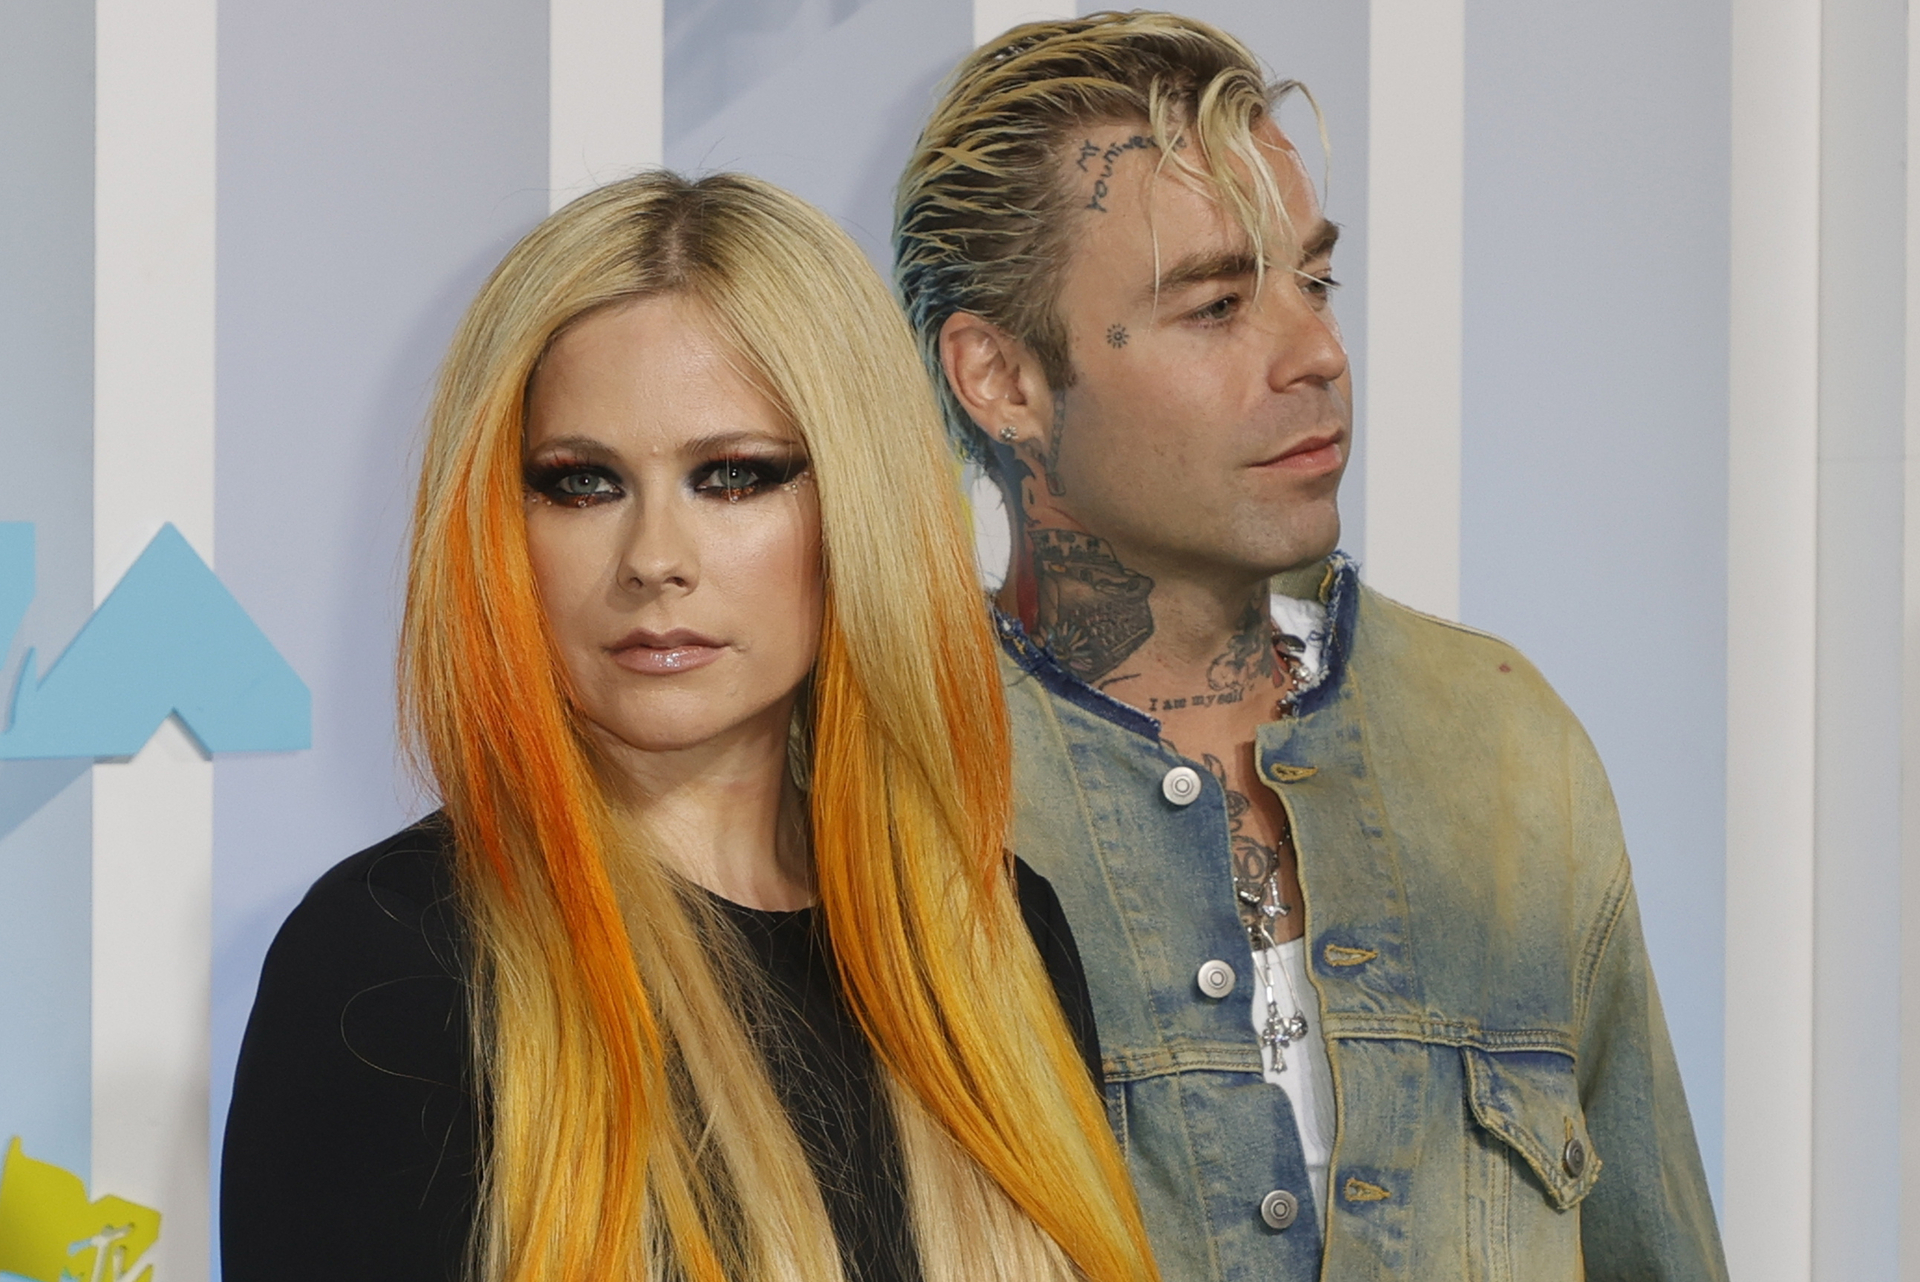 'Mantendré la cabeza en alto', Mod Sun está roto tras separación con Avril Lavigne